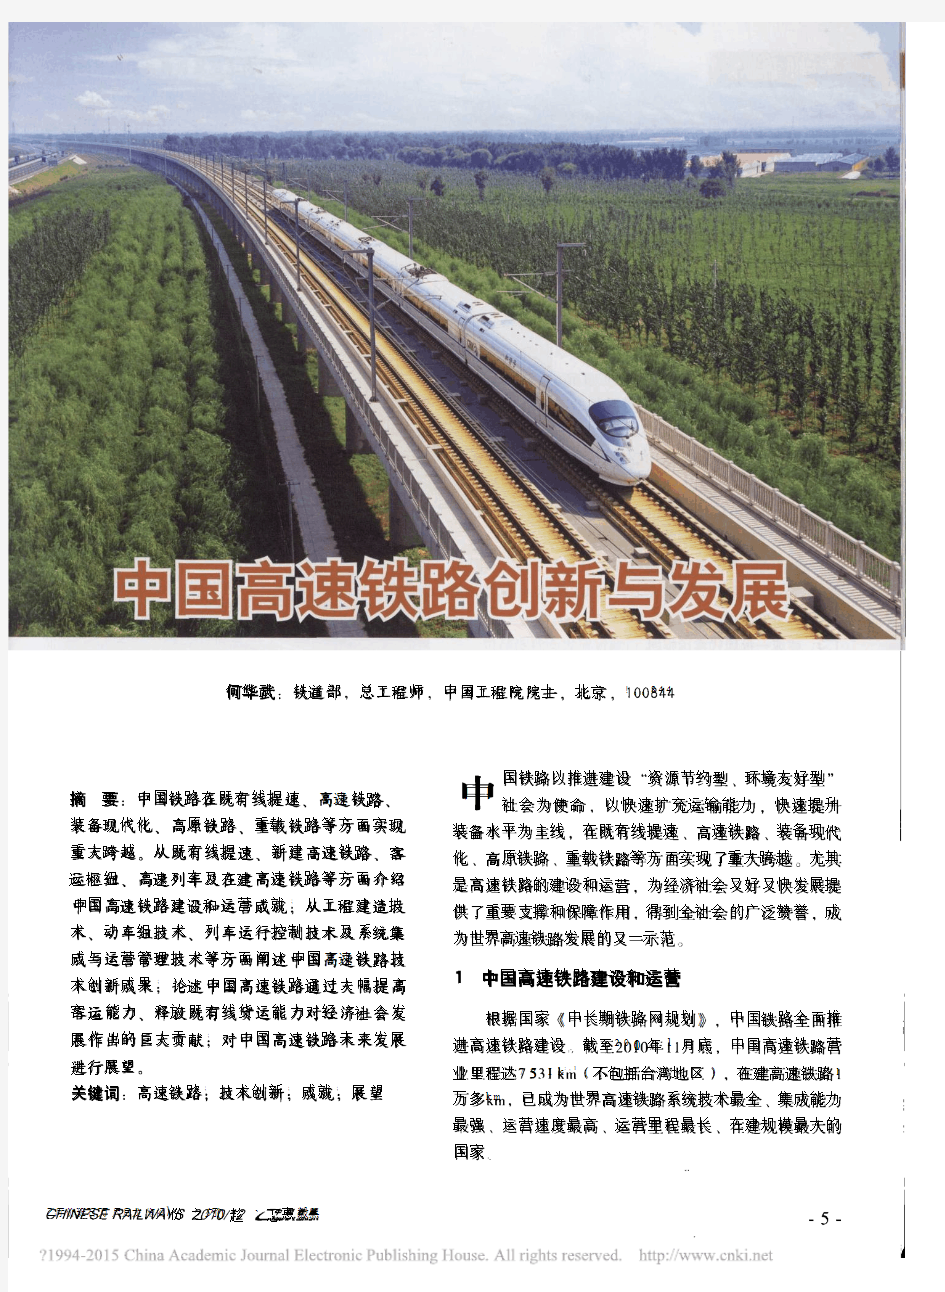 中国高速铁路创新与发展